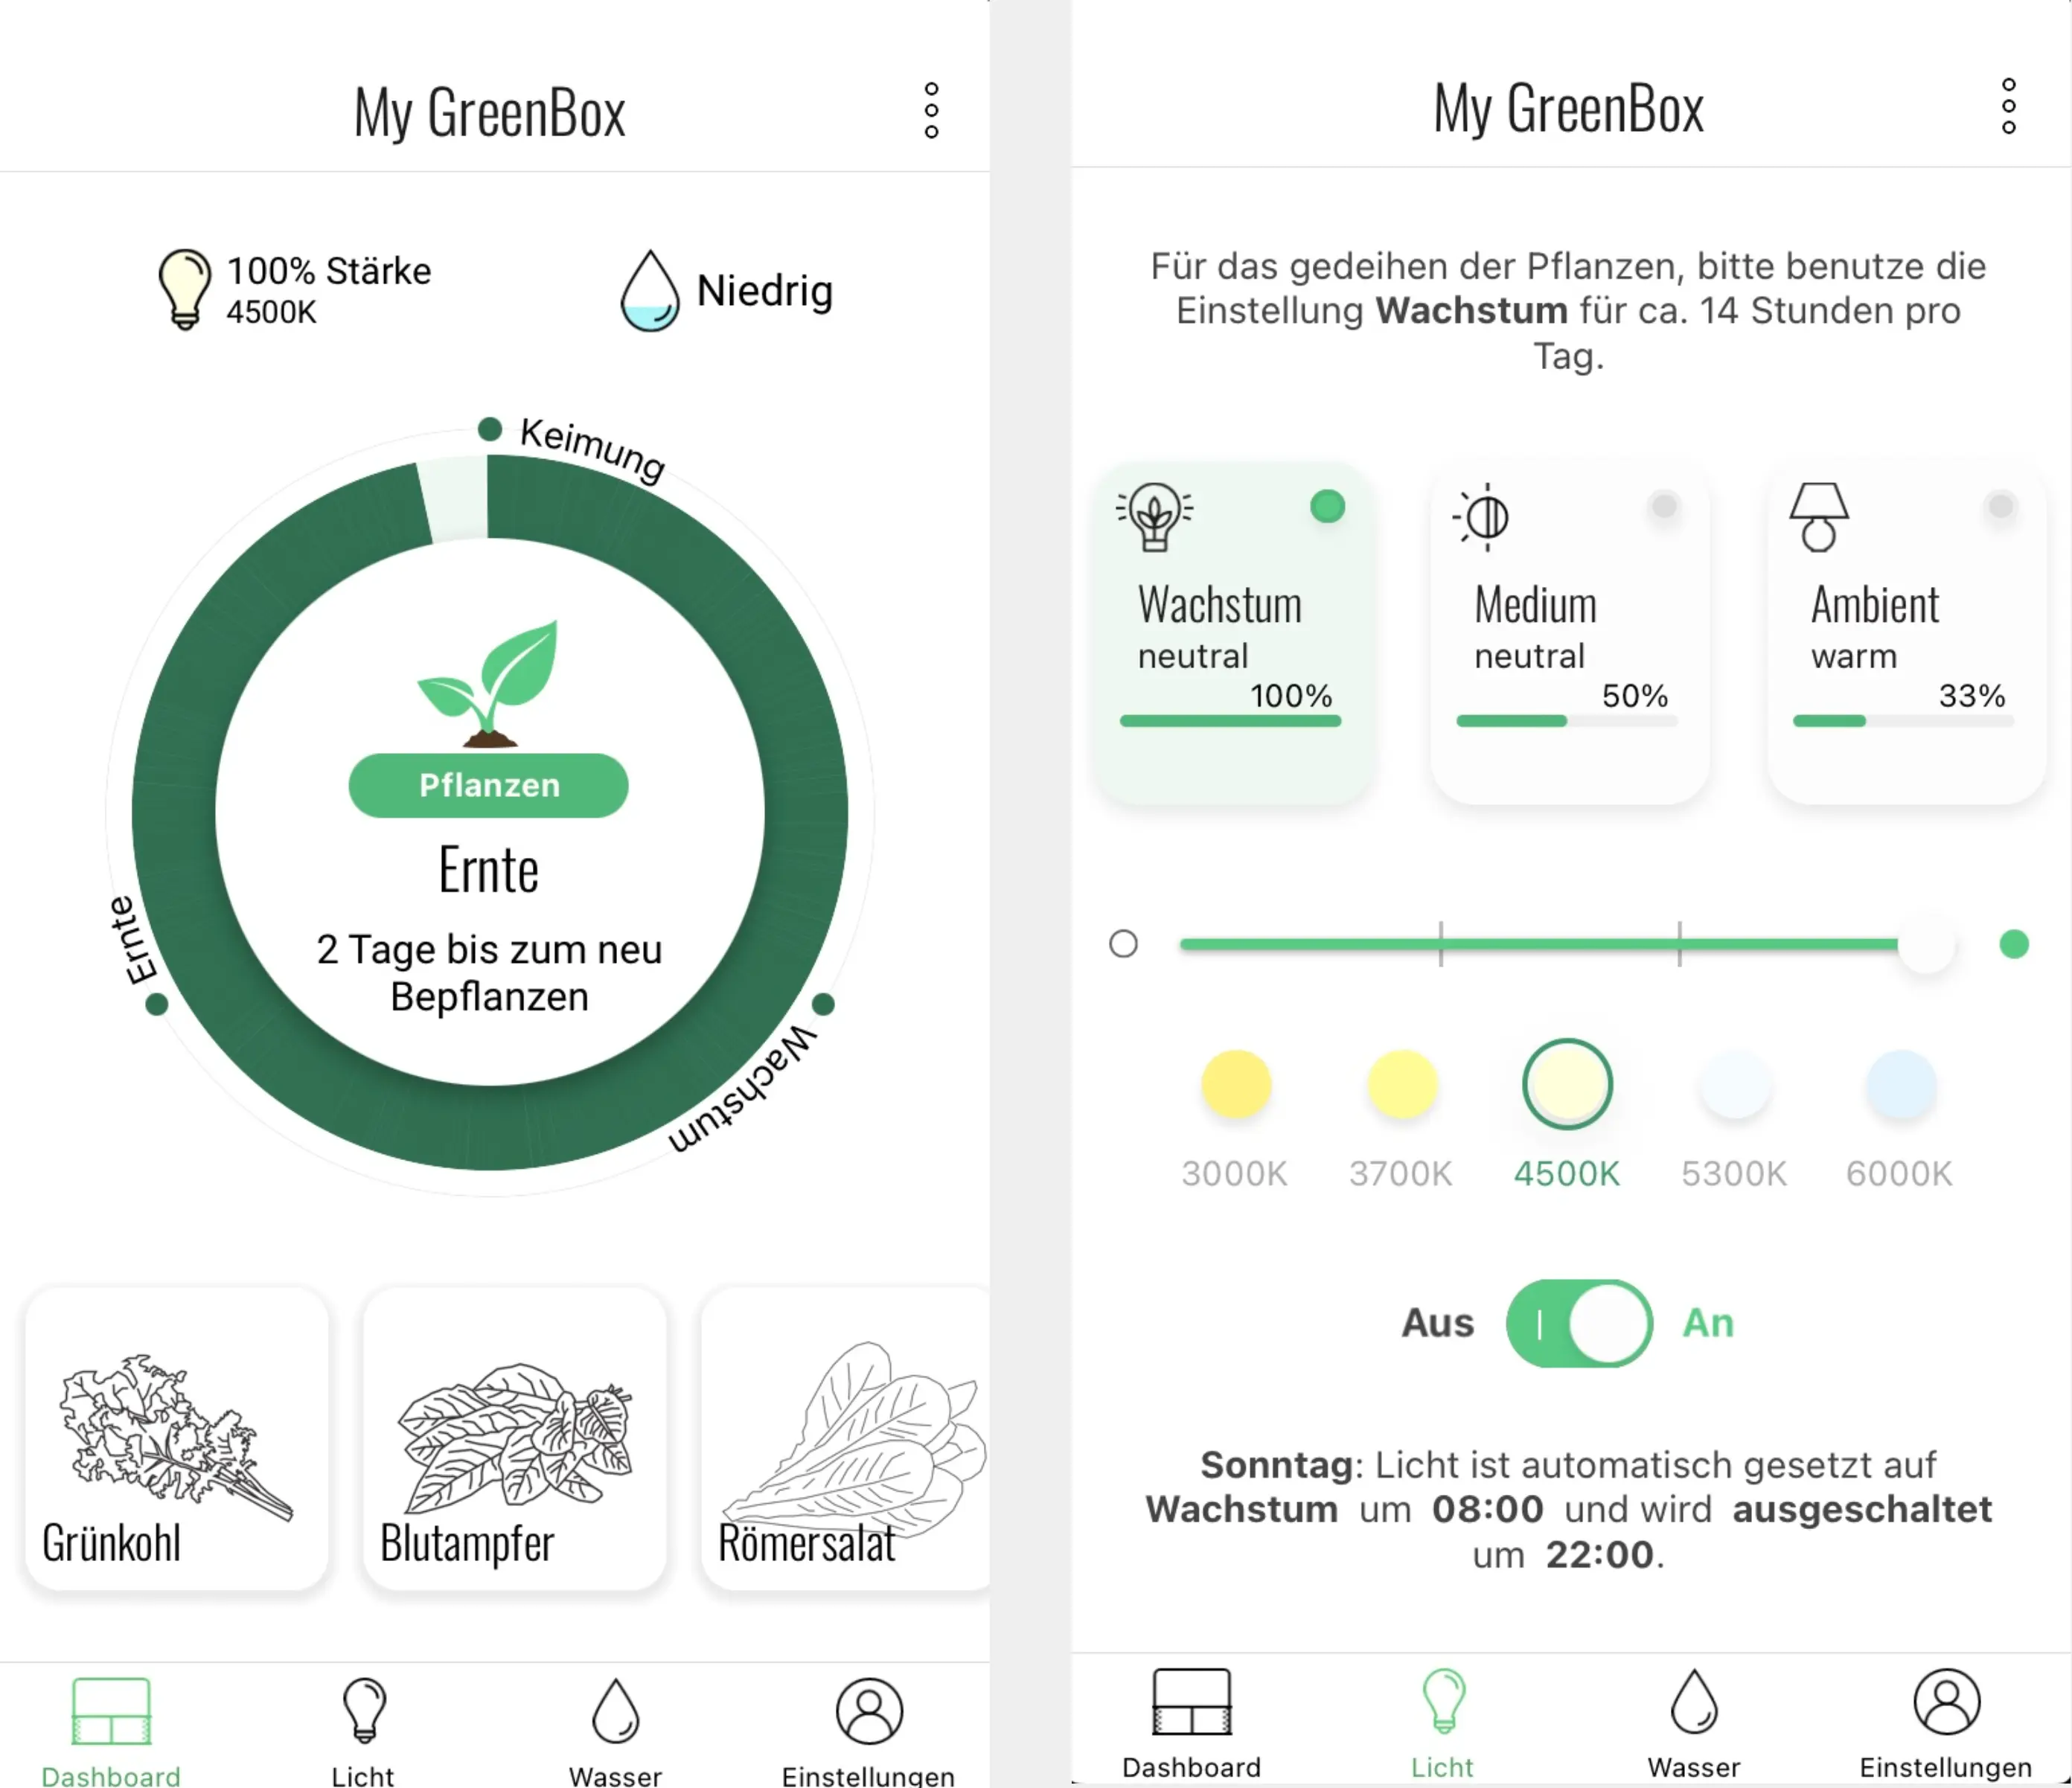 Greenbox App: Dashboard und Licht